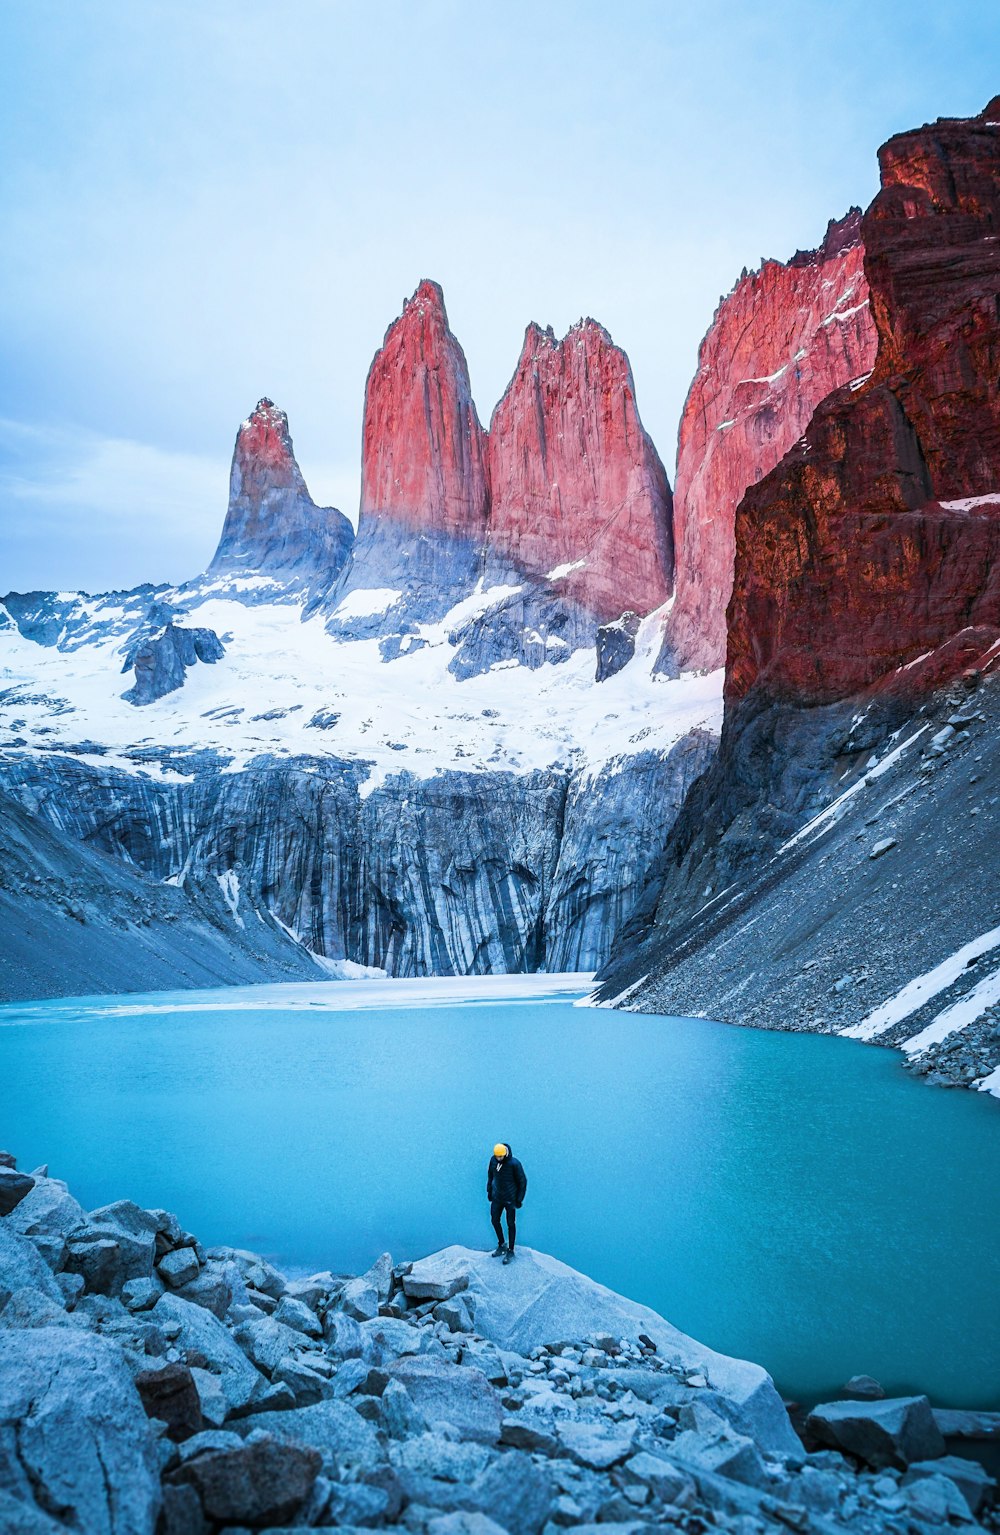 Mann steht auf Felsen mit Blick auf Gewässer und Berge